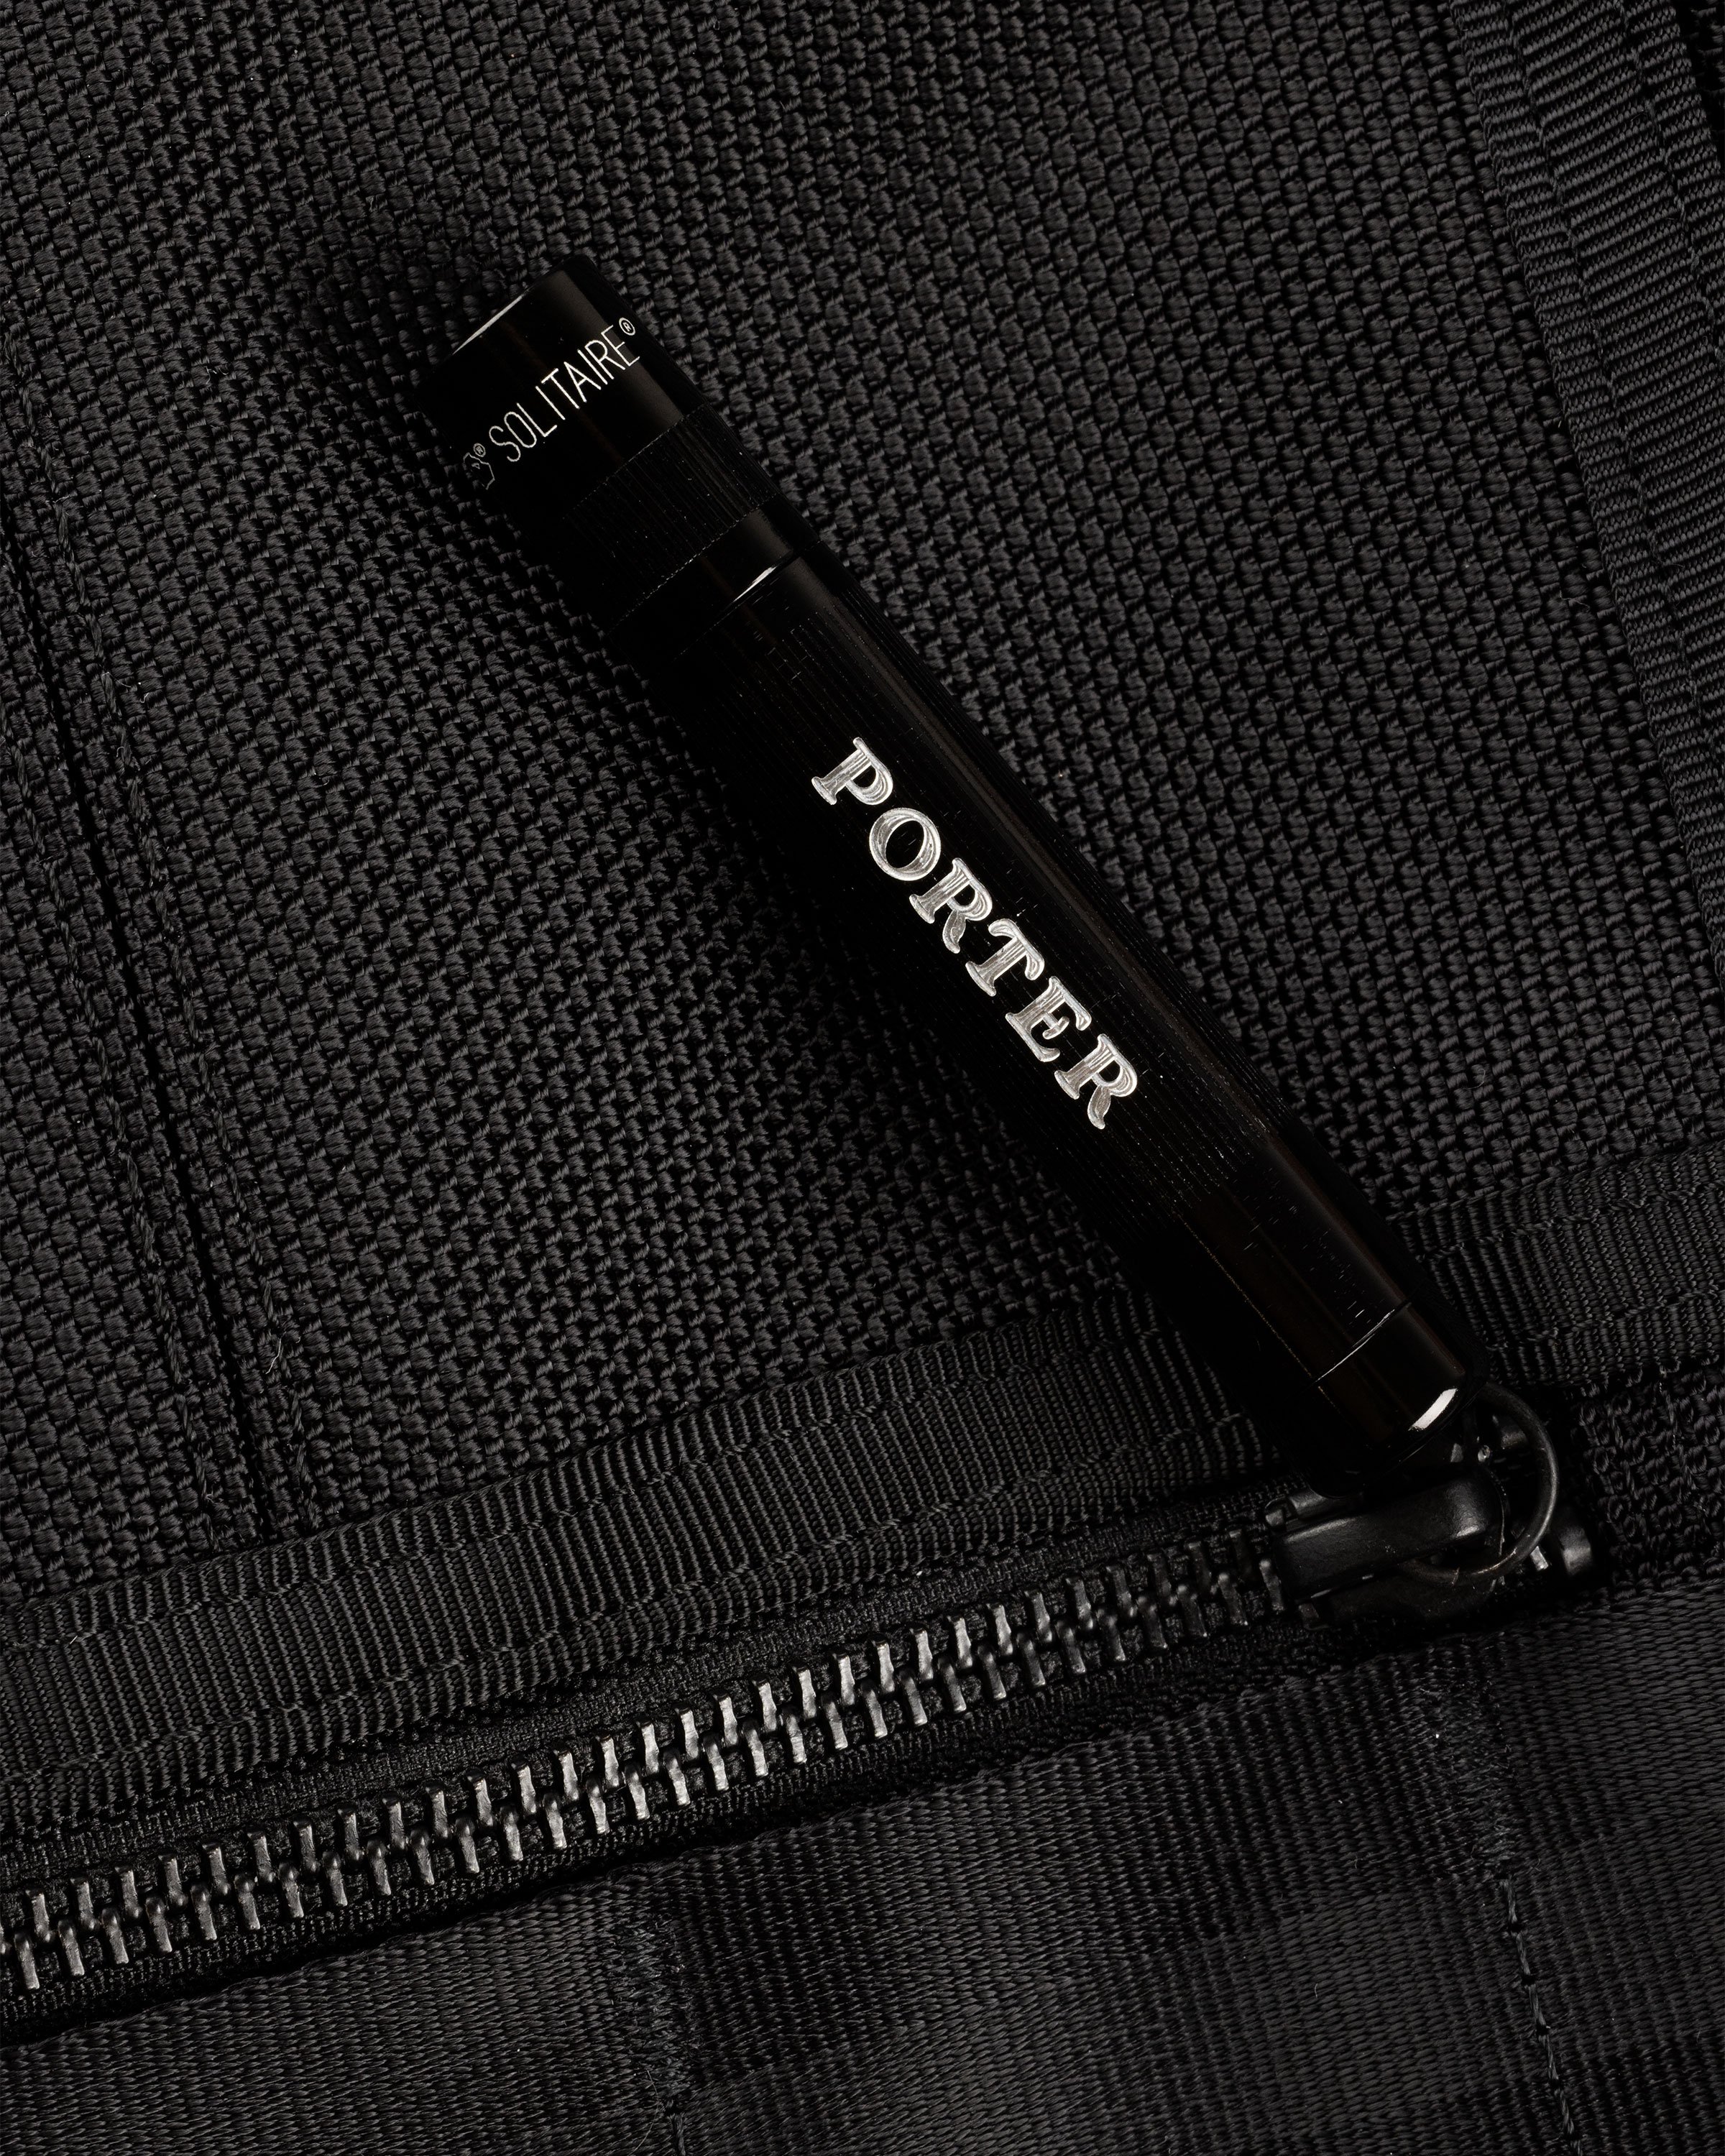 Porter-Yoshida & Co. – Heat Sling Shoulder Bag Black 